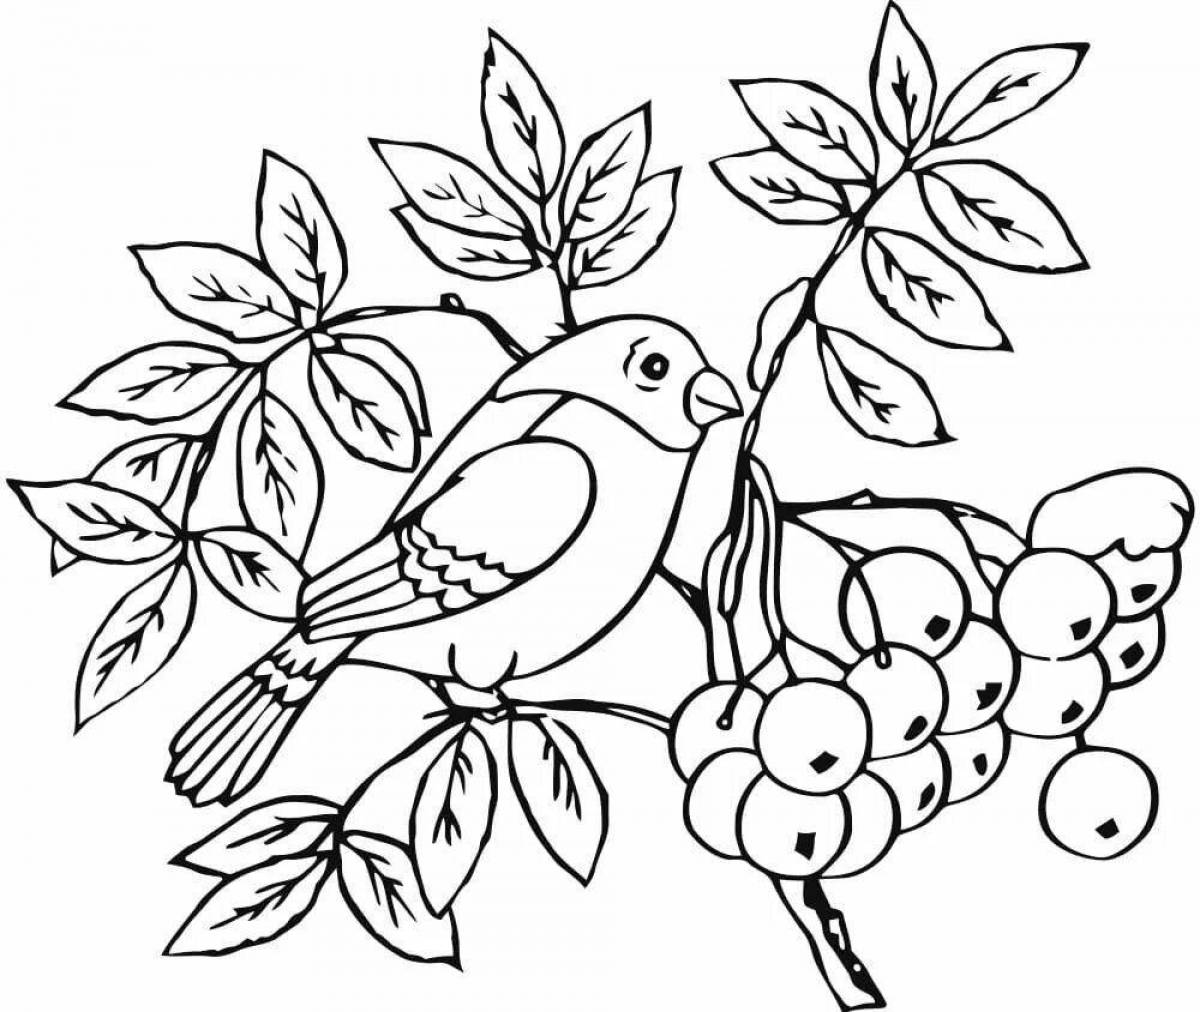 Coloring book joyful bird bullfinch